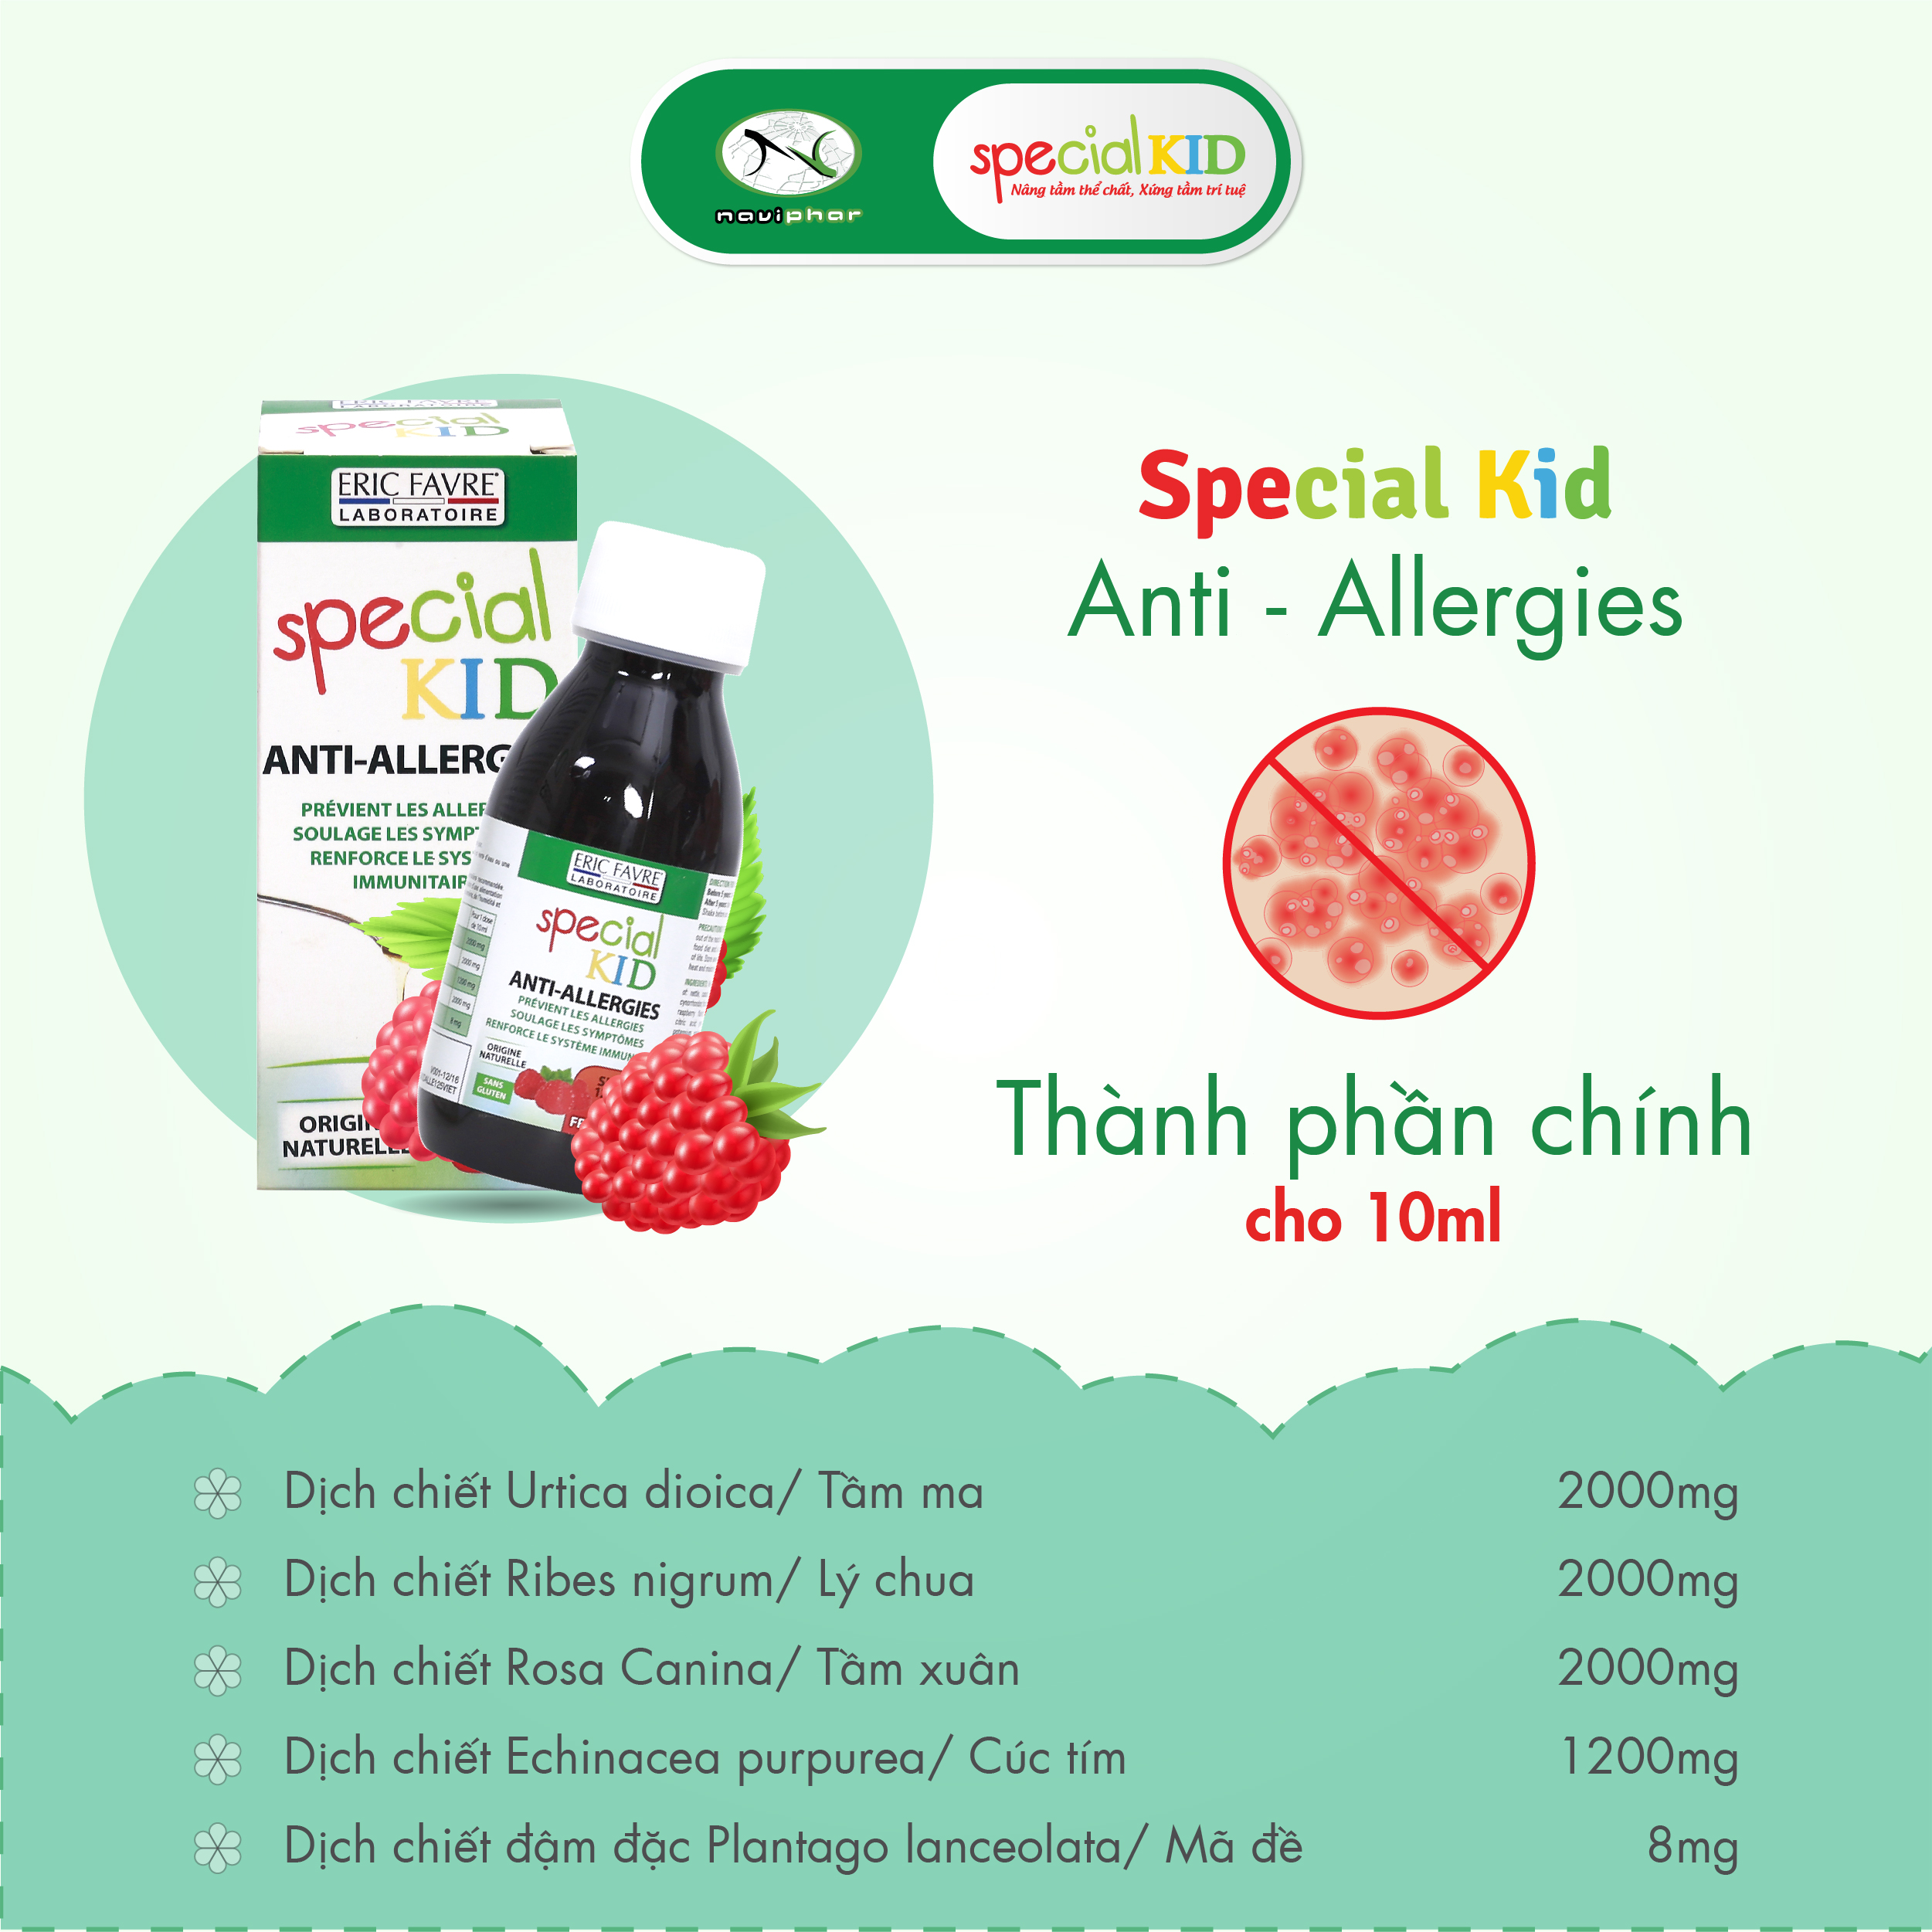 TPBVSK Special Kid Anti-Allergies - Hỗ trợ làm giảm các triệu chứng của dị ứng mẩn ngứa, nổi mề đay (125ml) [Siro – Nhập khẩu Pháp]